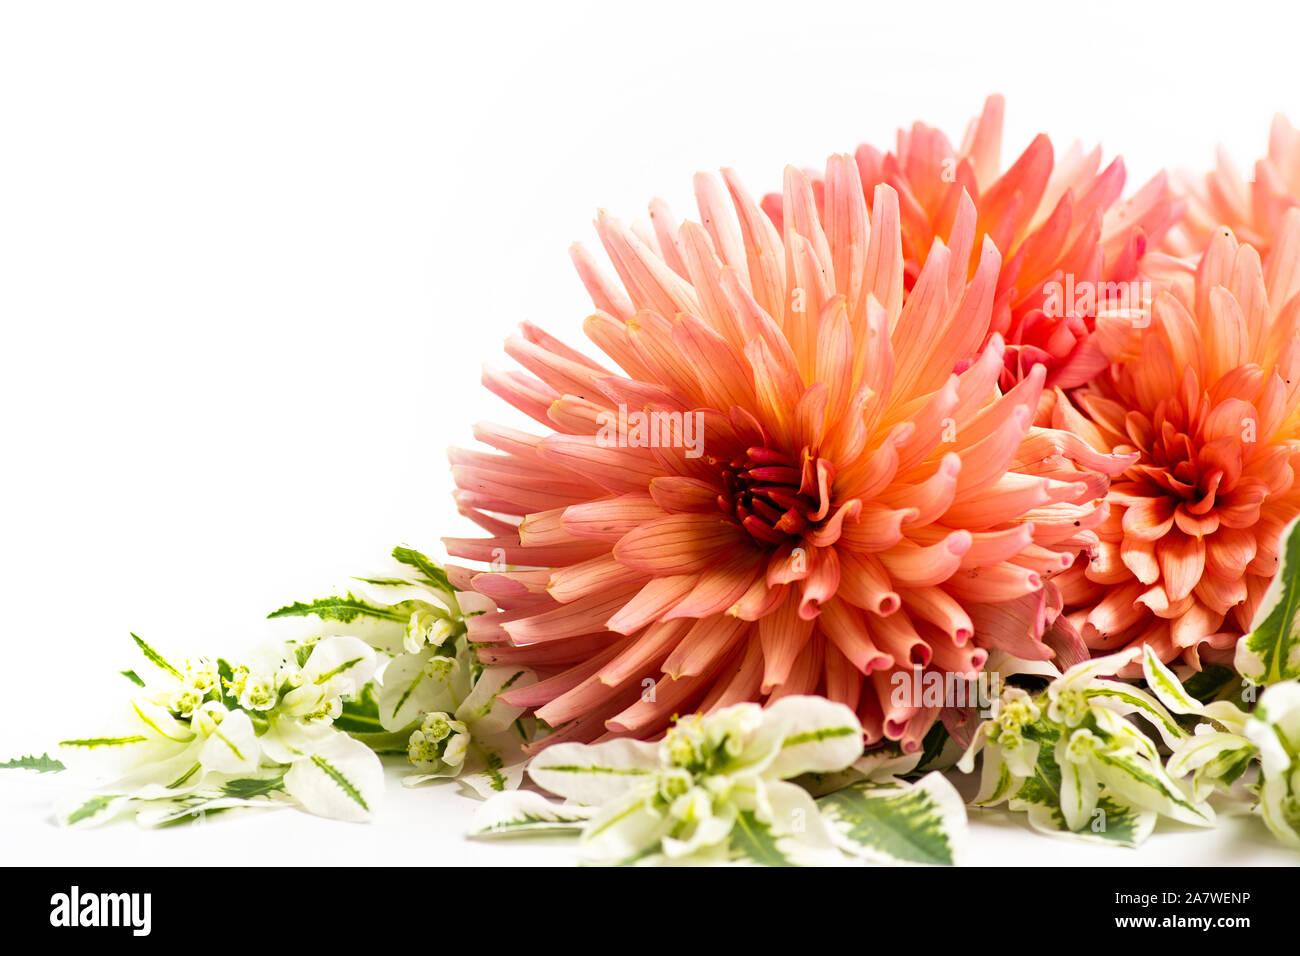 Beautiful Dahlia flower isolated on white background Stock Photo